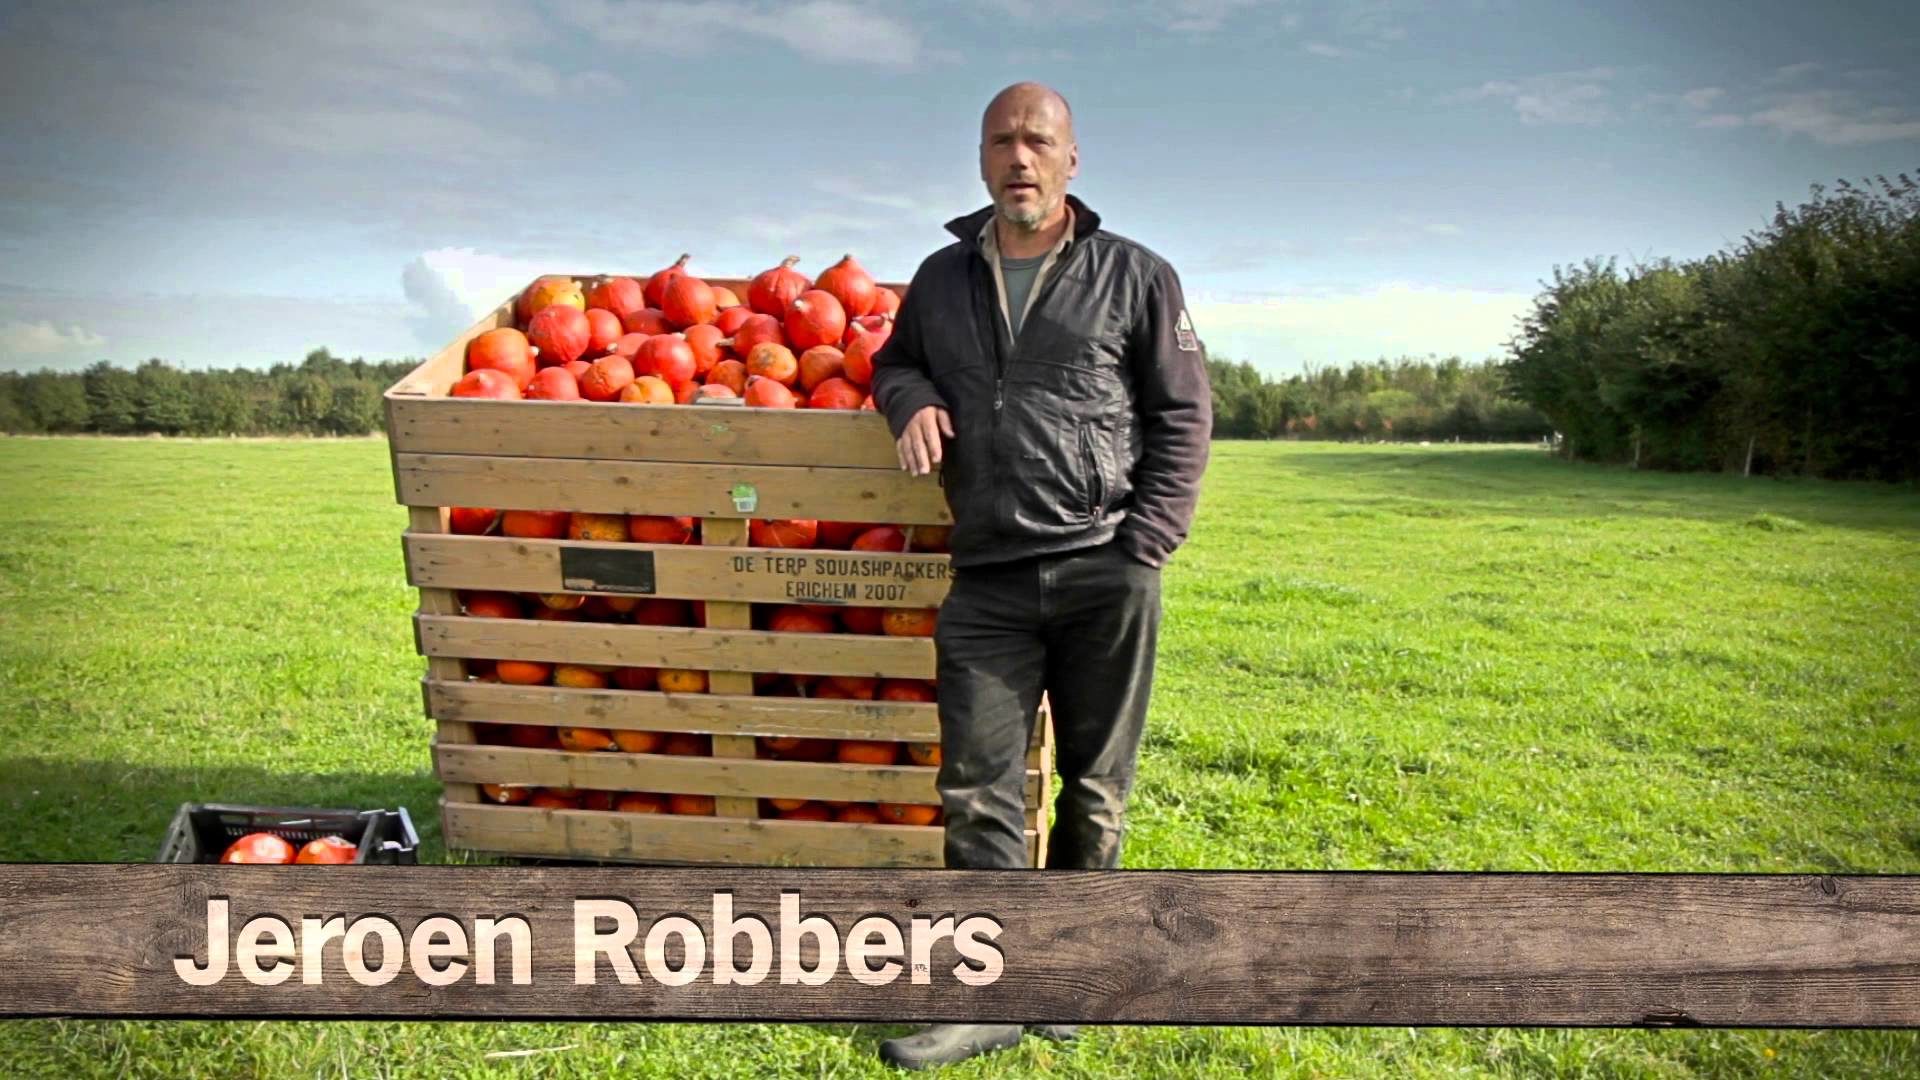 Jeroen Robbers, De Terp Squashpackers